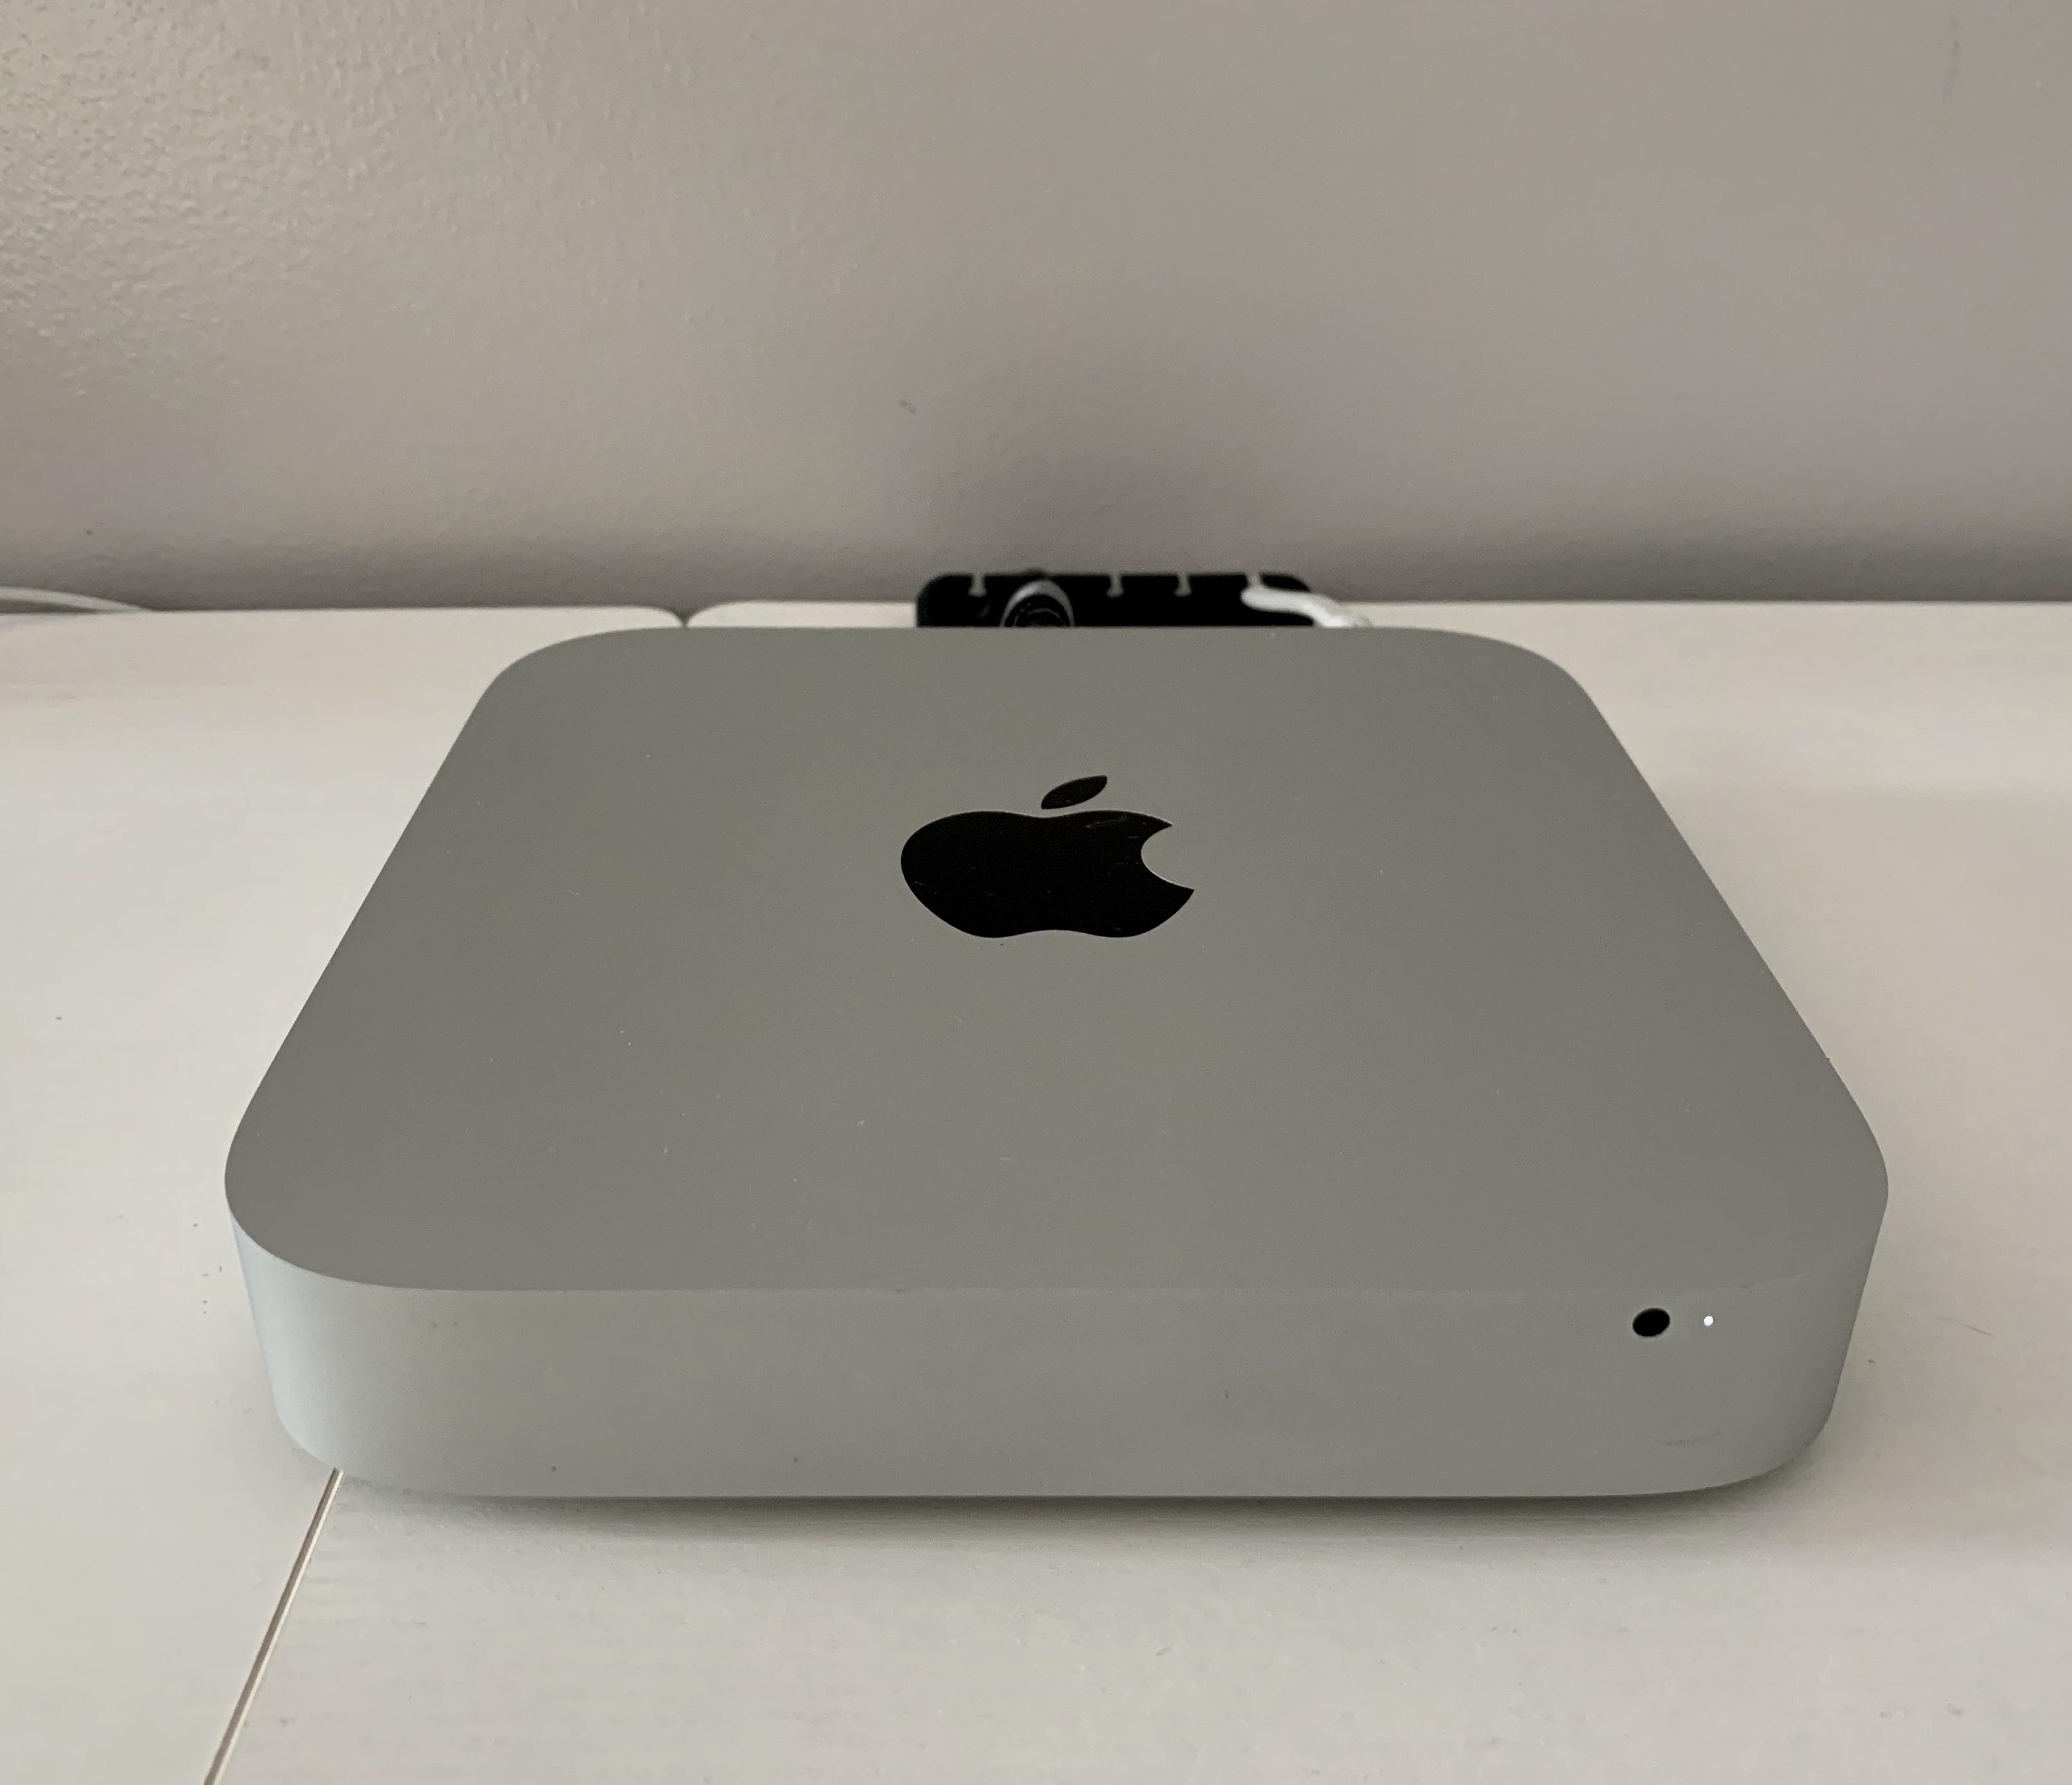 mac mini 2011 upgrade